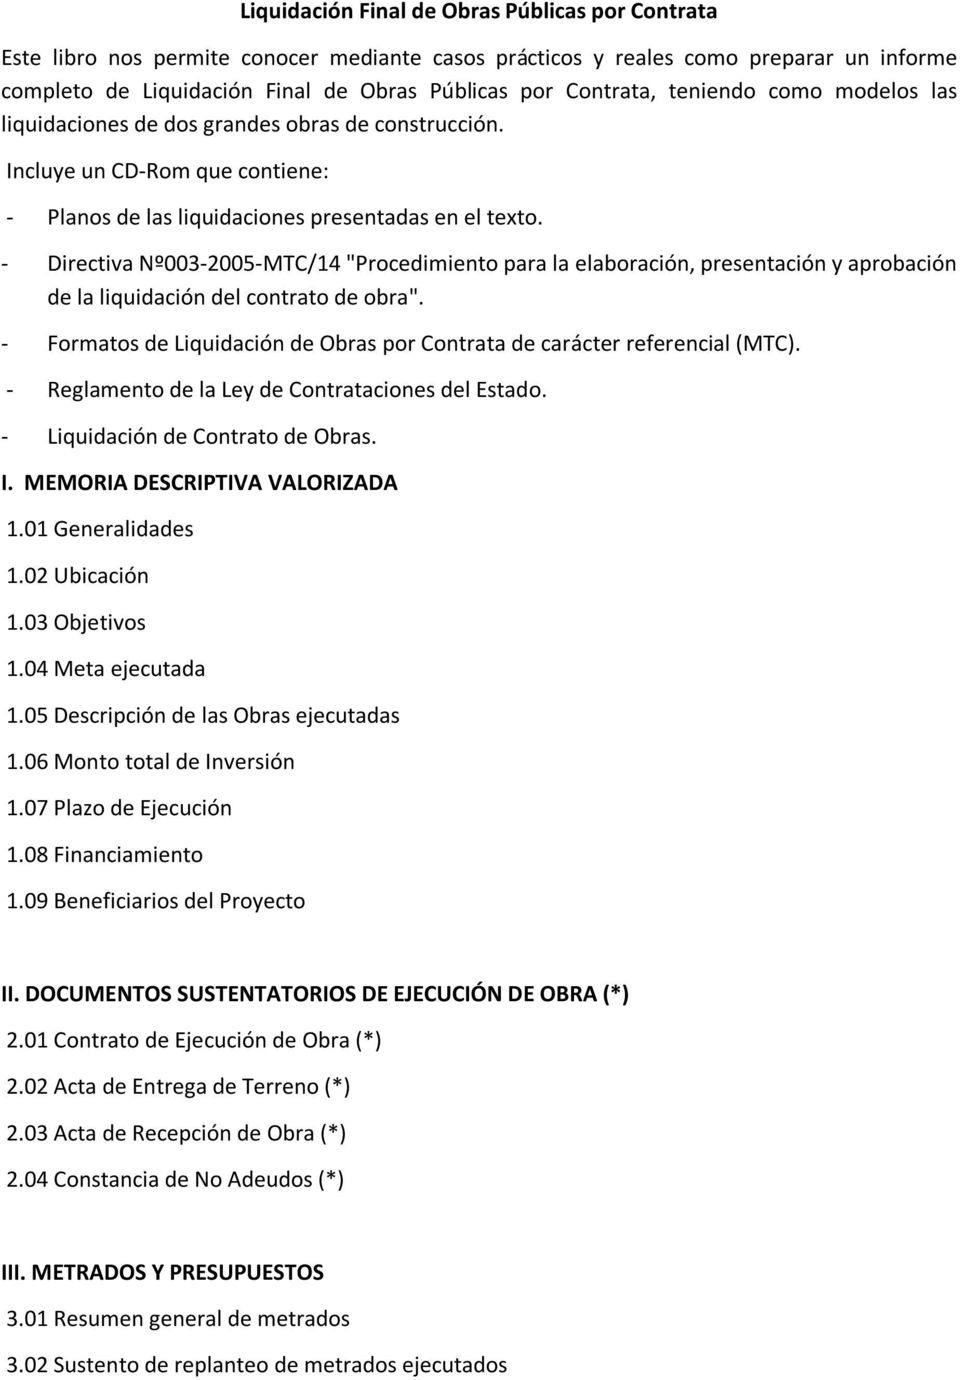 - Directiva Nº003-2005-MTC/14 "Procedimiento para la elaboración, presentación y aprobación de la liquidación del contrato de obra".